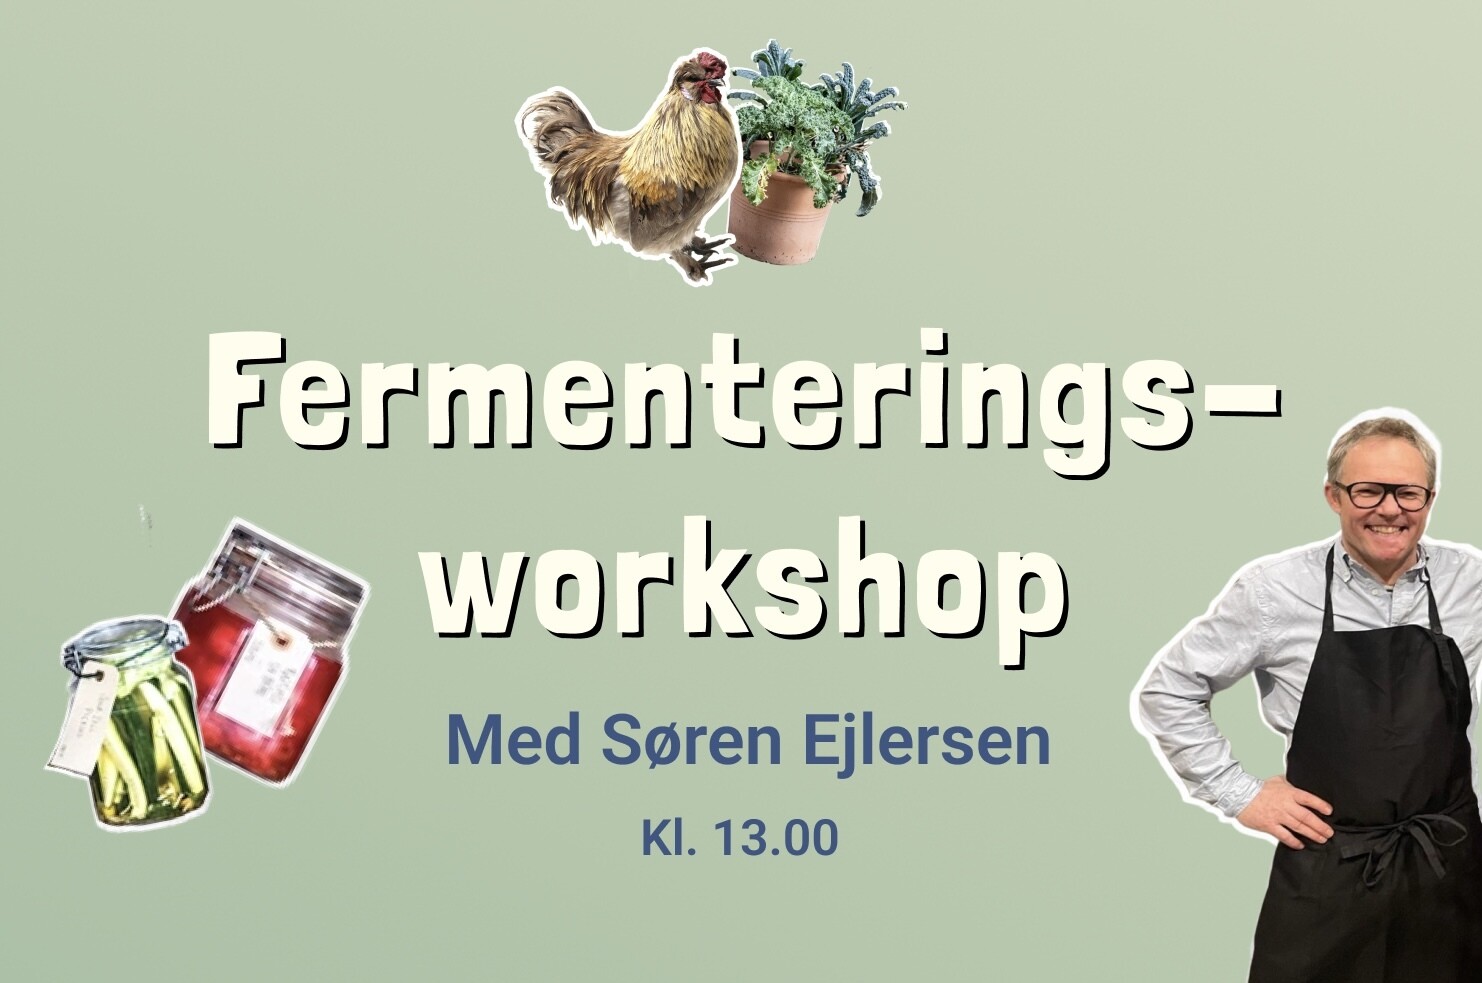 Fermenteringsworkshop med Søren Ejlersen